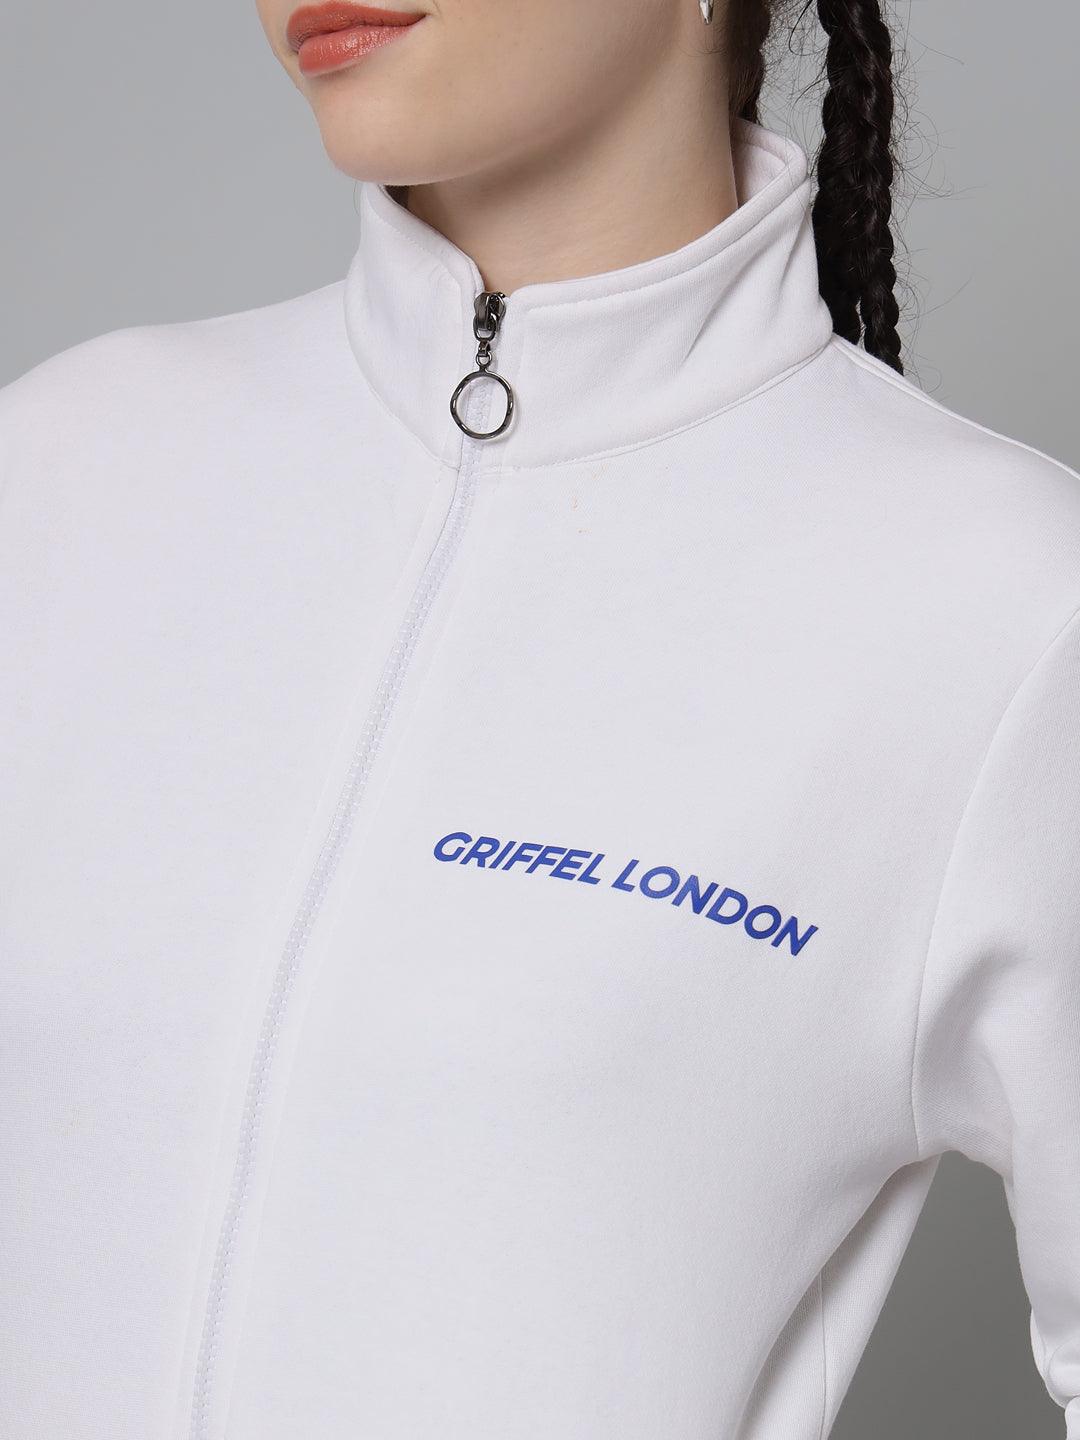 Griffel Women’s Cotton Fleece Full Sleeve White Zipper Sweatshirt - griffel